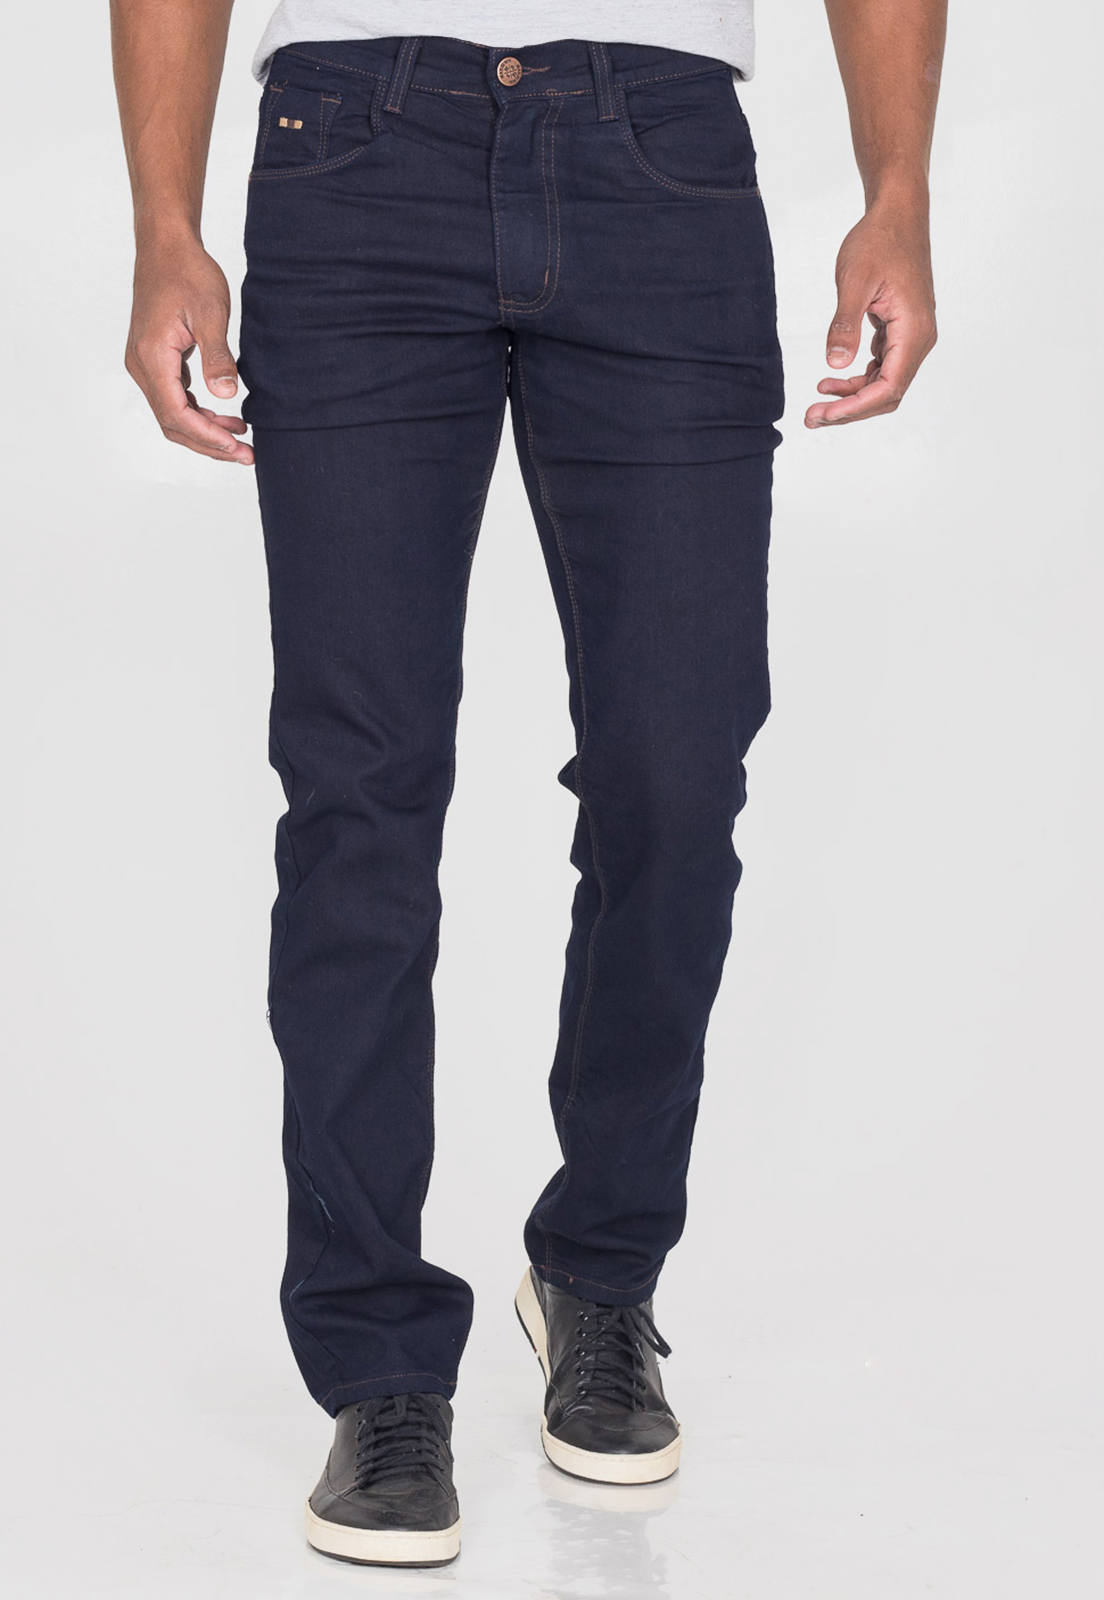 Calça Jeans Masculina Slim Premium Com Elastano Sem Lavagem